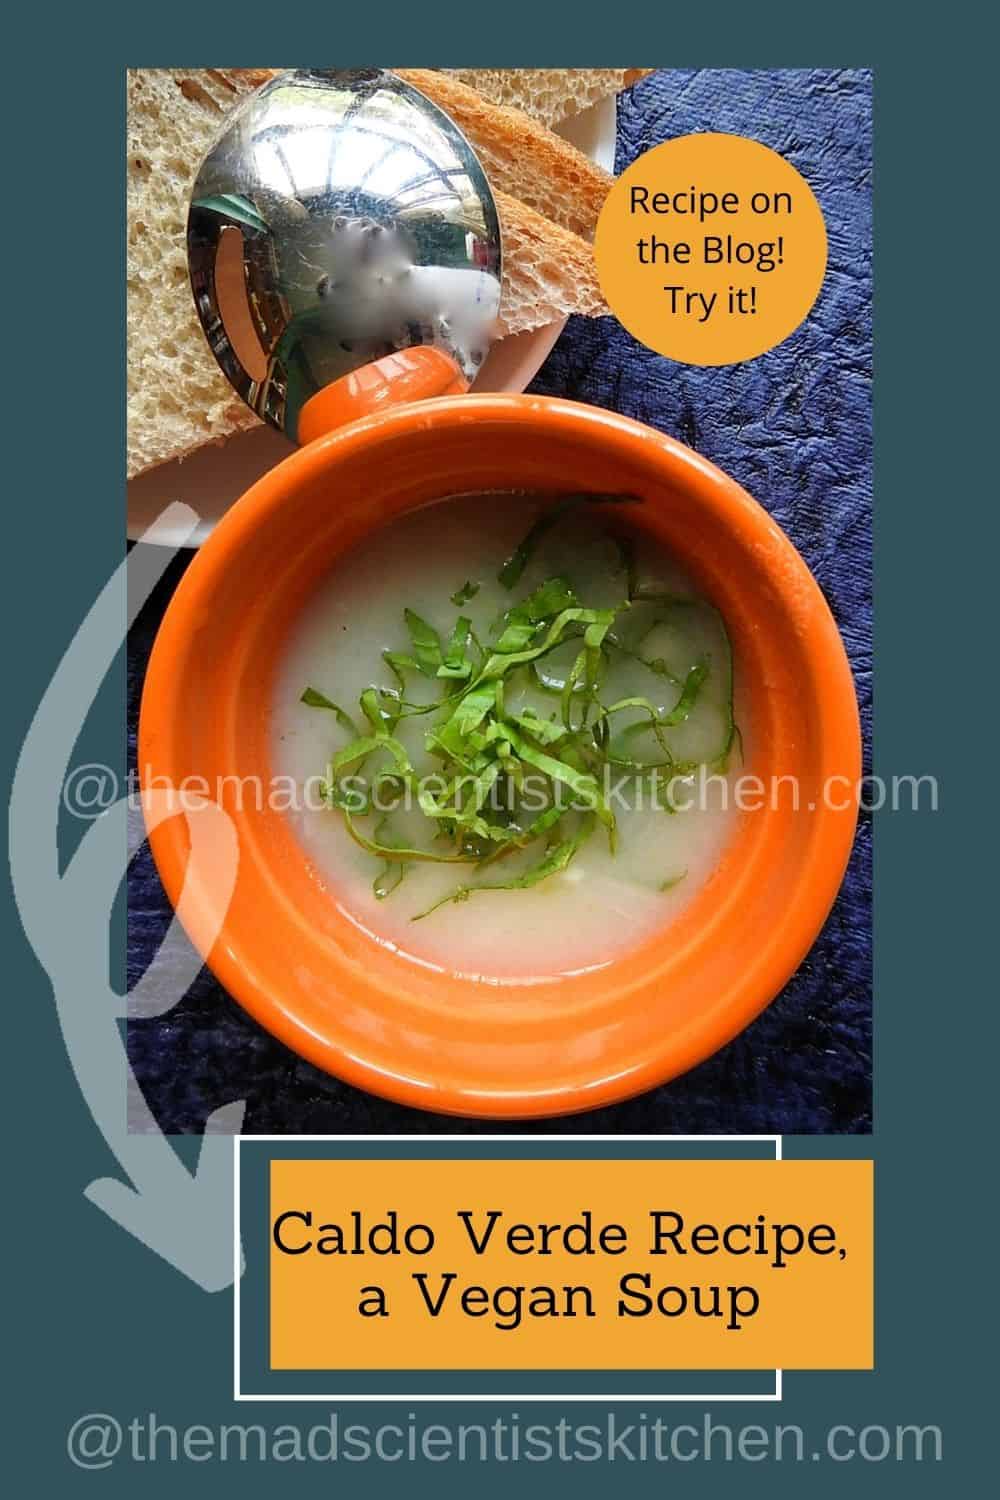 Caldo Verde, a Vegan and gluten-free soup